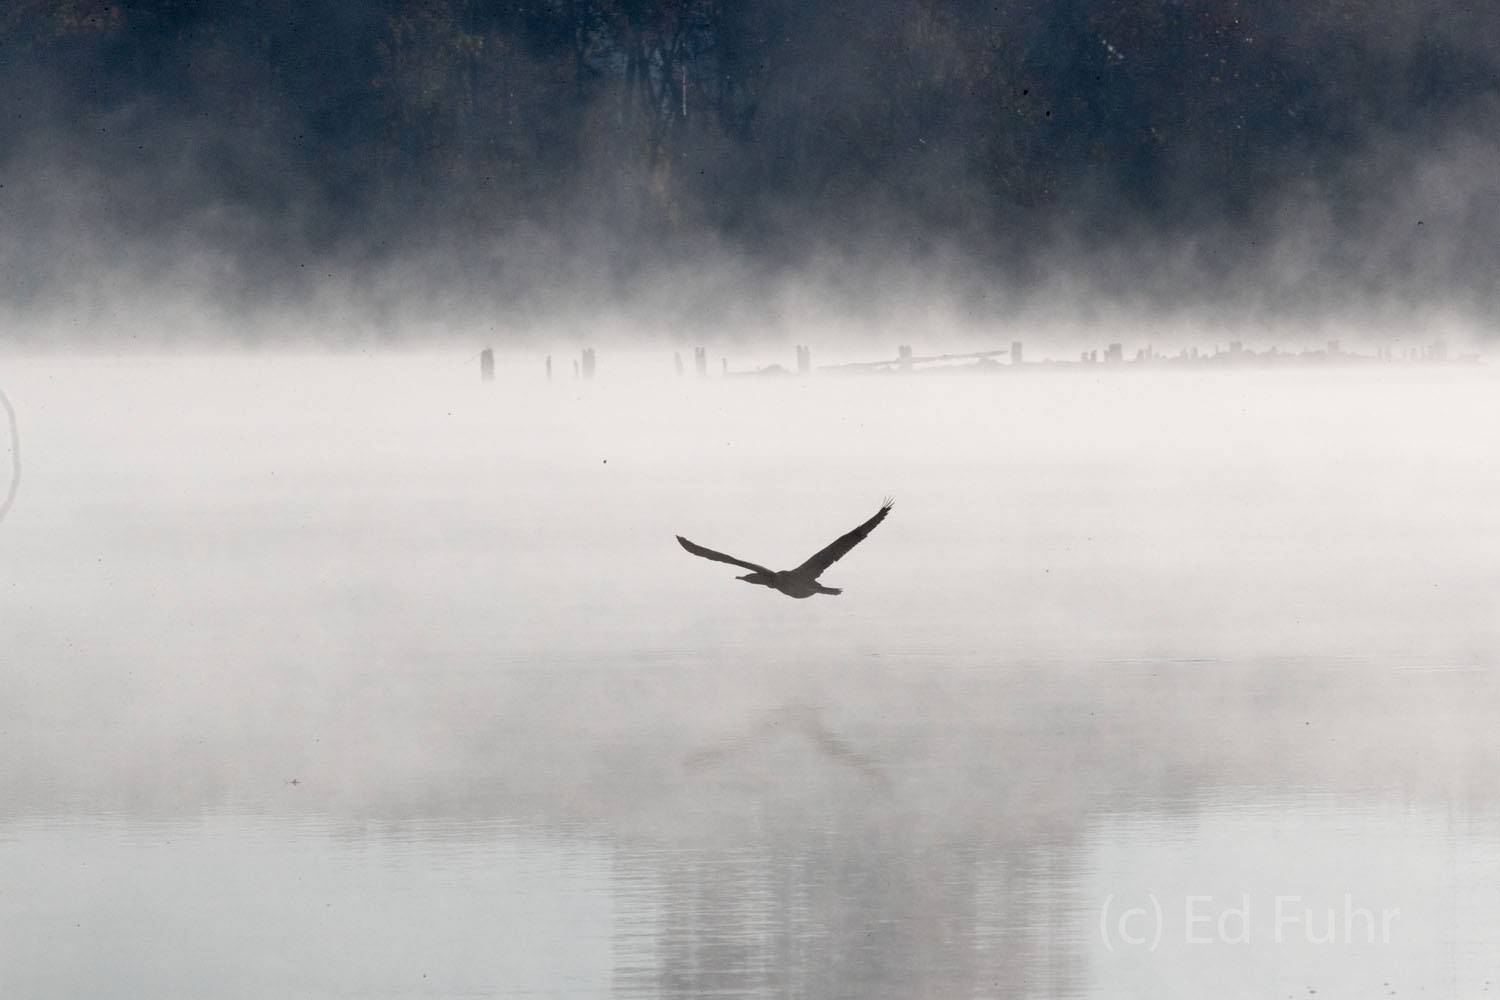 A cormorant leads us through the fog.